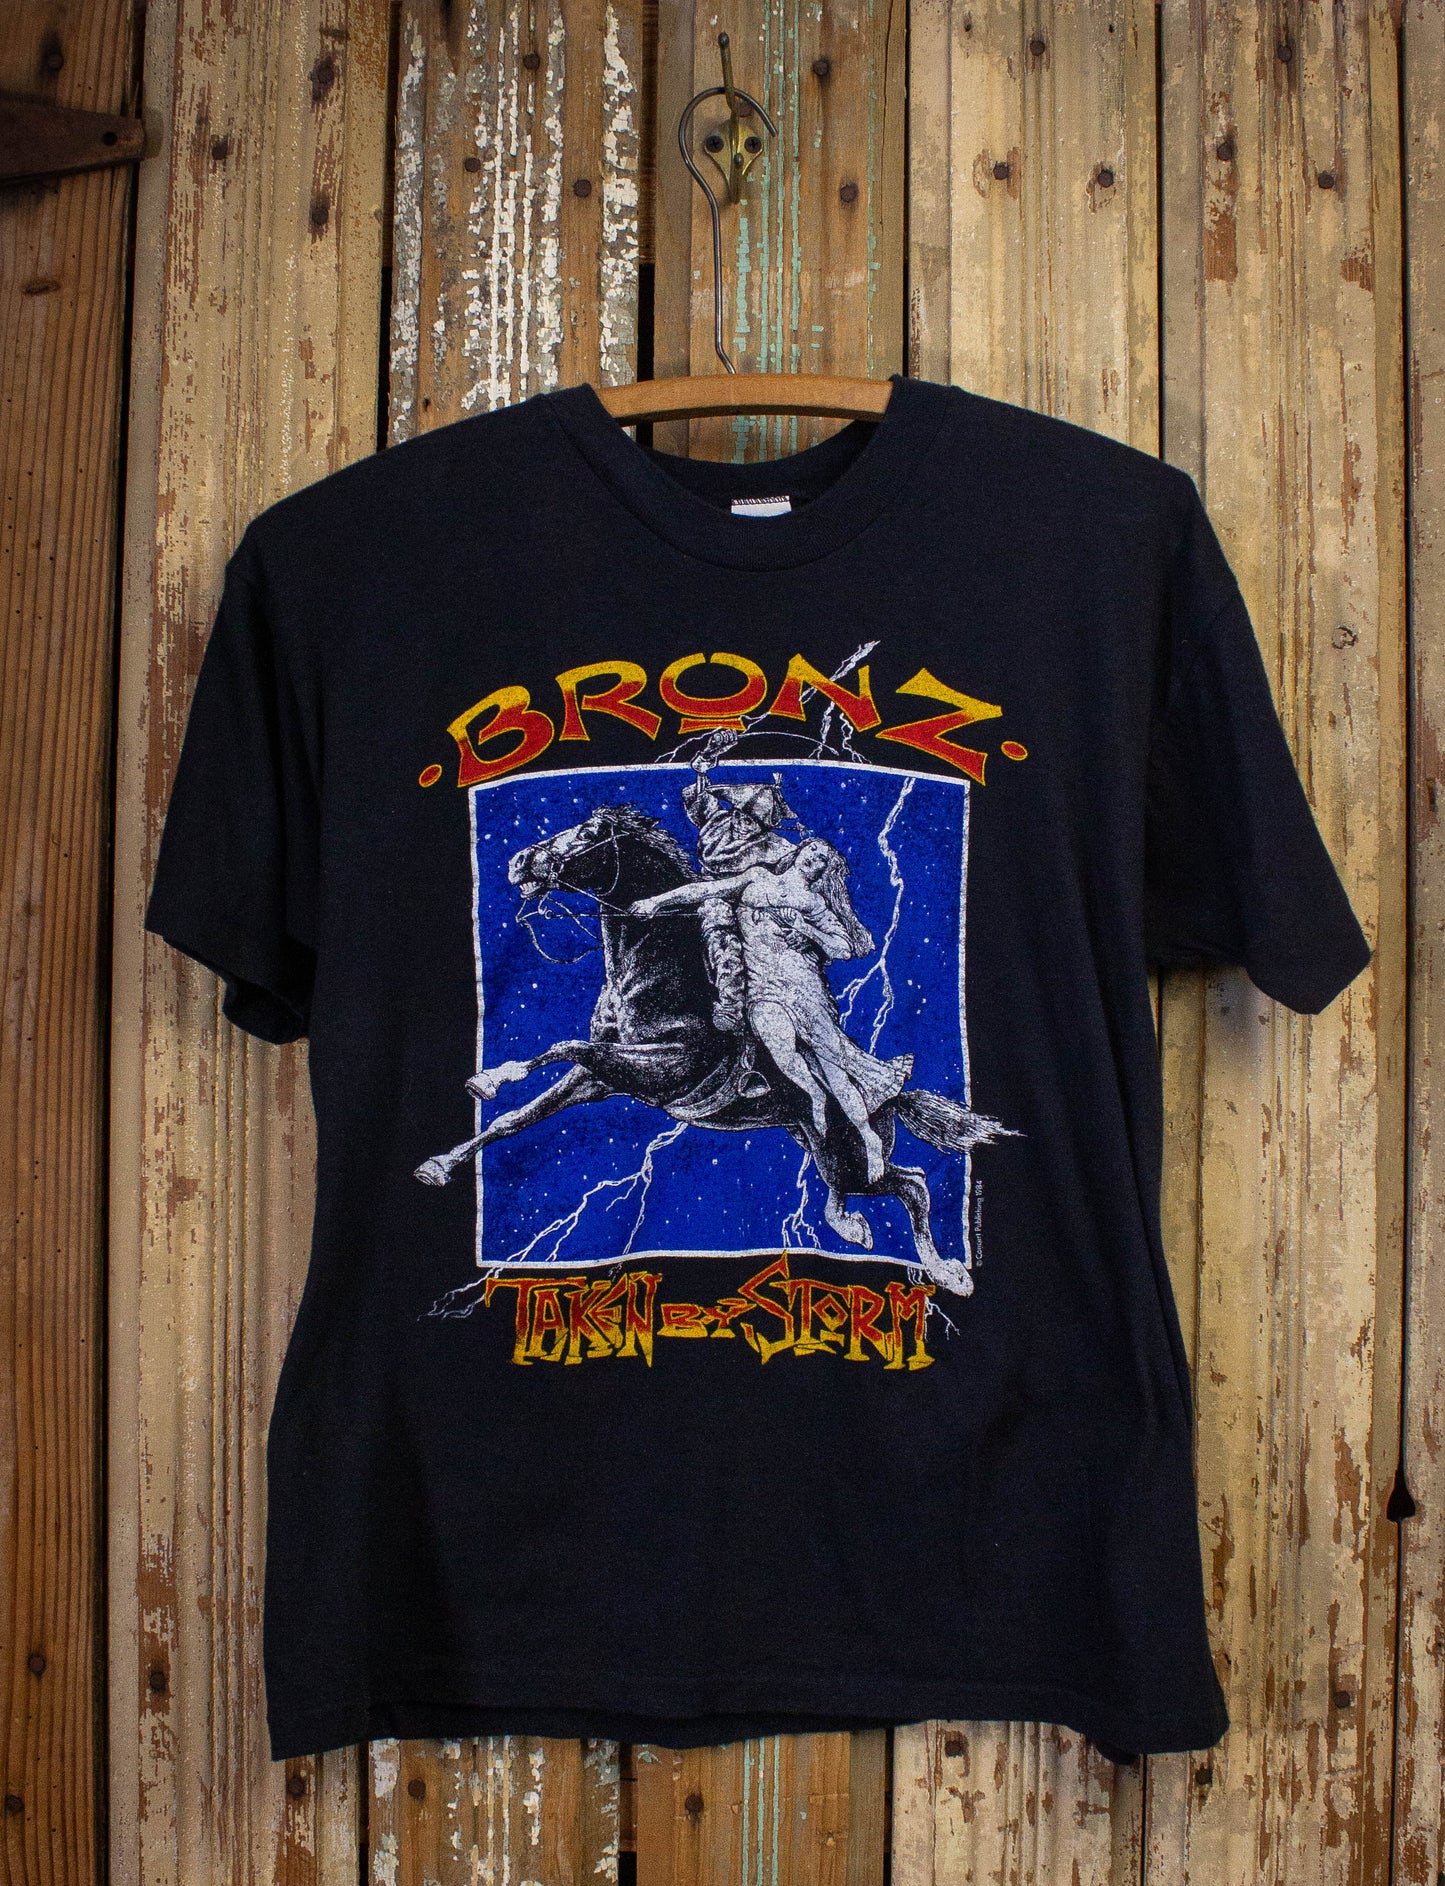 Vintage Bronz Taken By Storm Concert T Shirt 1984 Black